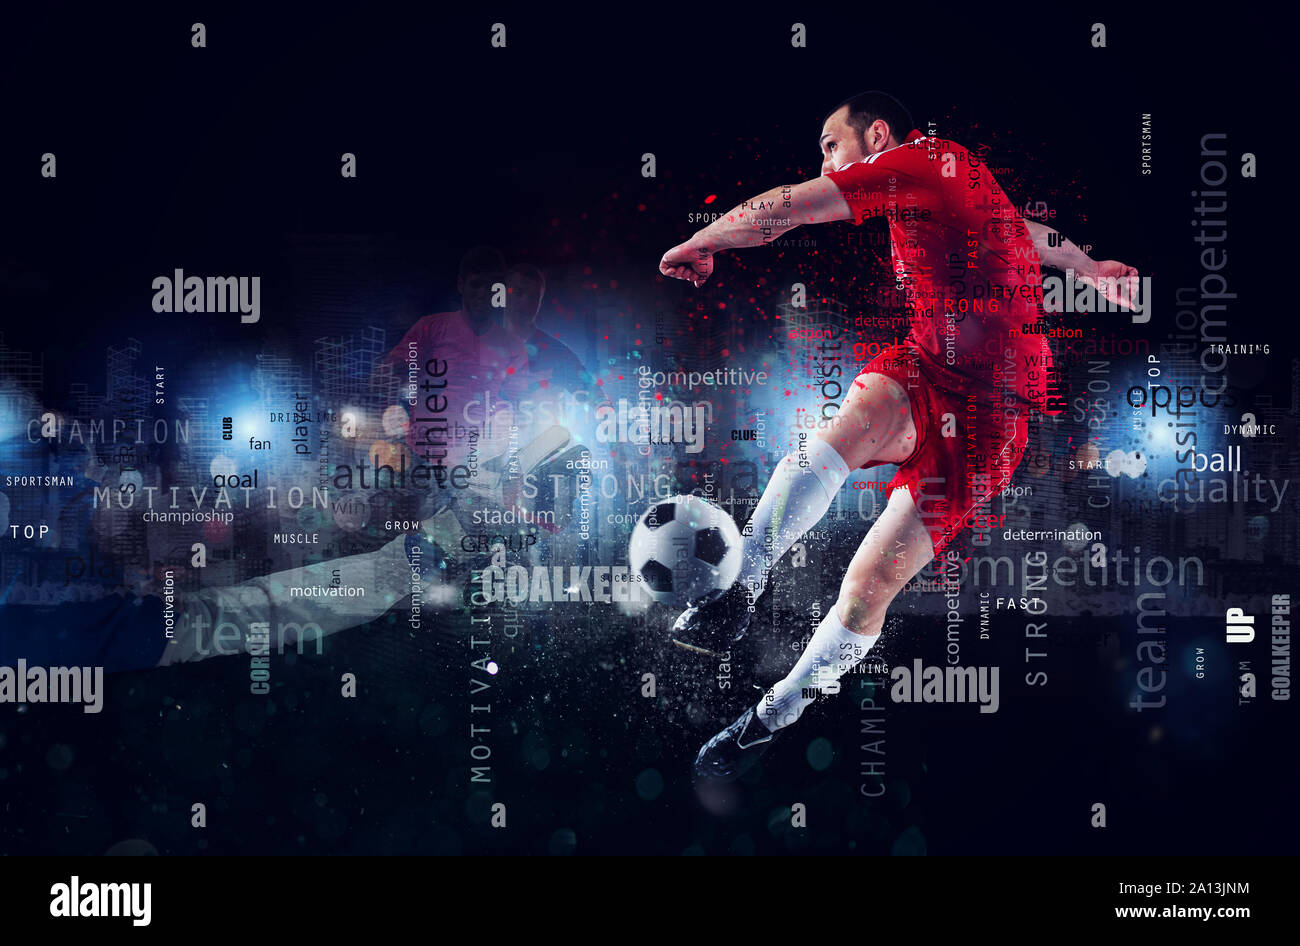 Scène de football d'un joueur de football en action. Effet de texte en fond avec le plus utilisé des termes. Abstract background Banque D'Images